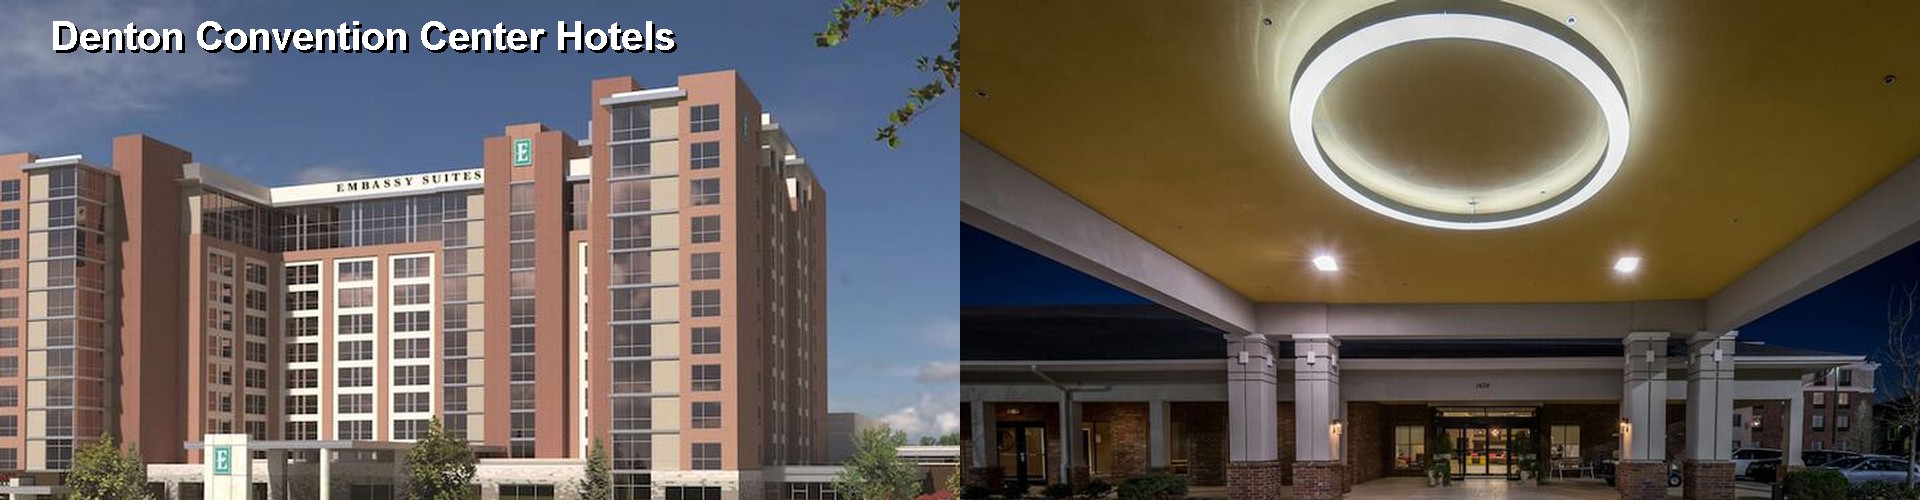 5 Best Hotels near Denton Convention Center